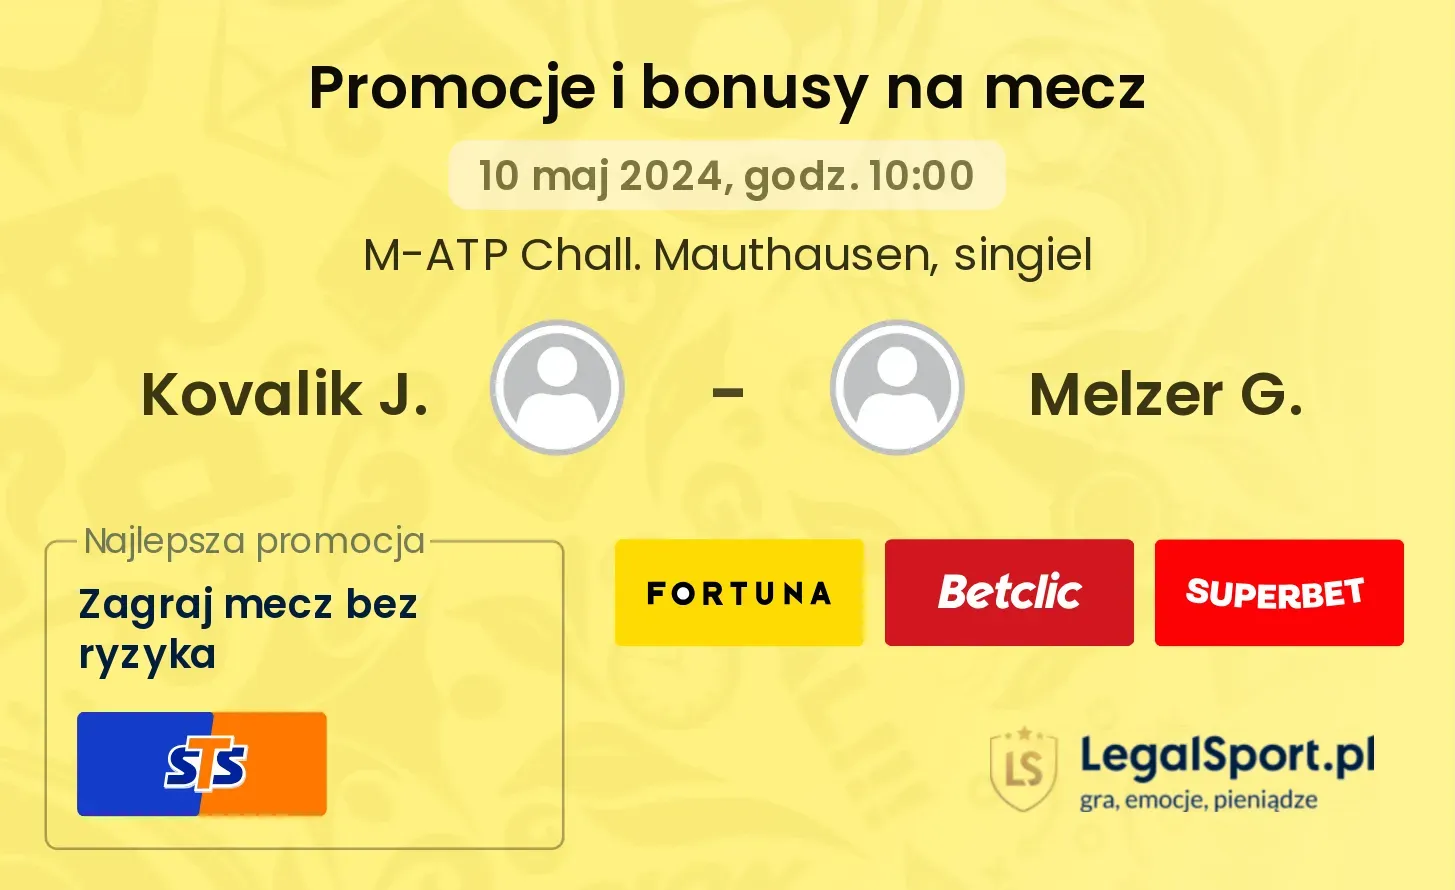 Kovalik J. - Melzer G. promocje bonusy na mecz